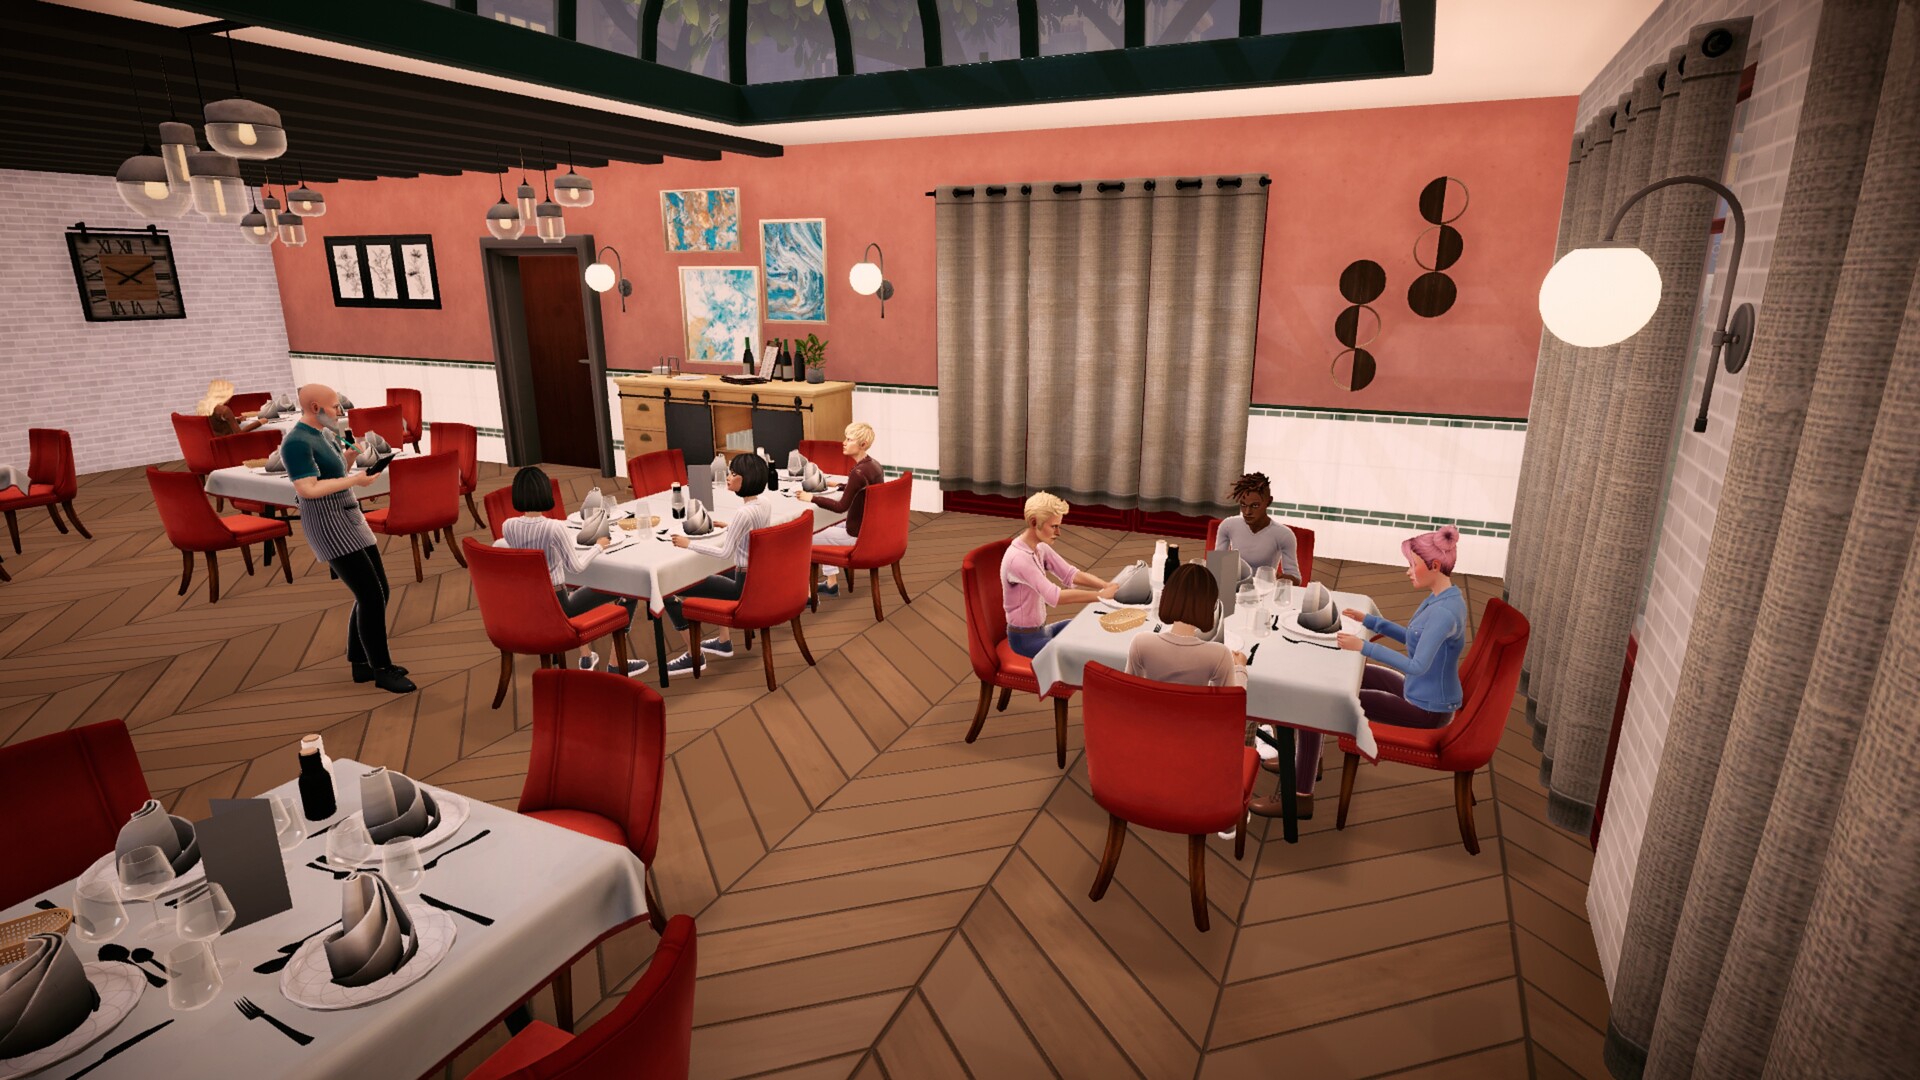 Chef Life: A Restaurant Simulator Al Forno Edition | ROW 1 (6e85f2bf-e95d-4813-8907-722b32c9fa3f)